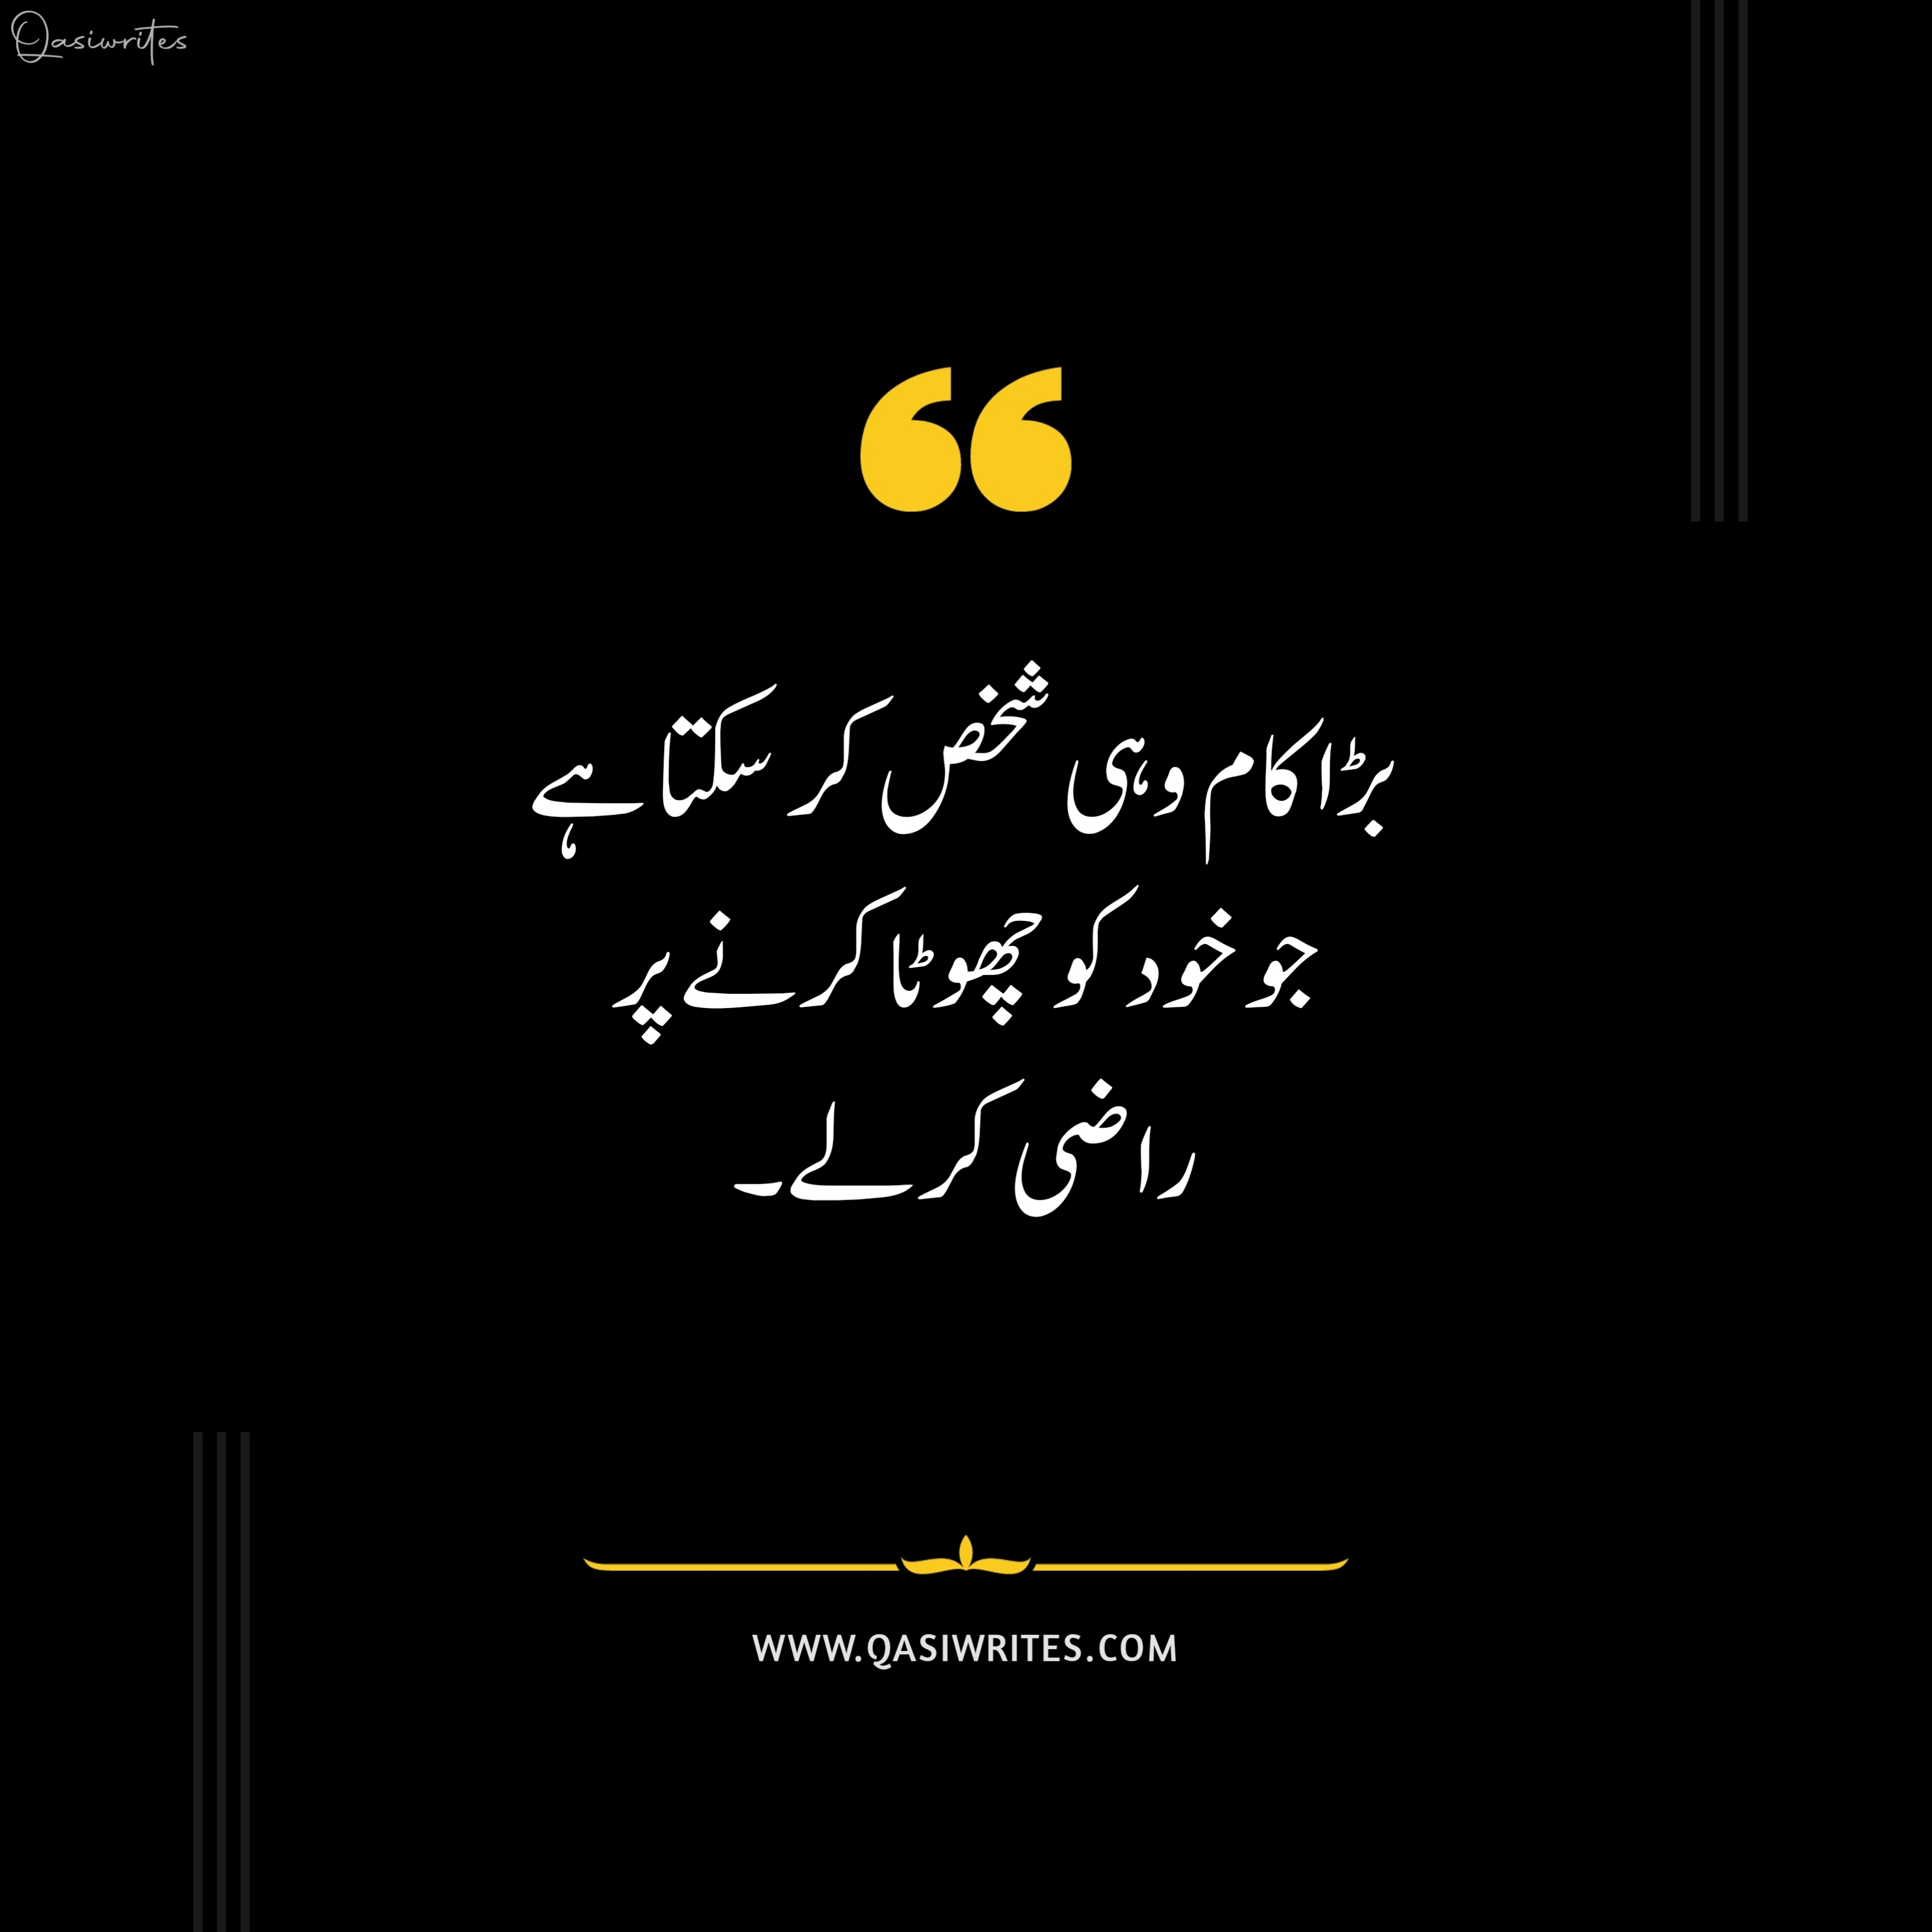 Best Motivational Urdu Quotes on Life | Deep Quotes in Urdu - Qasiwrites